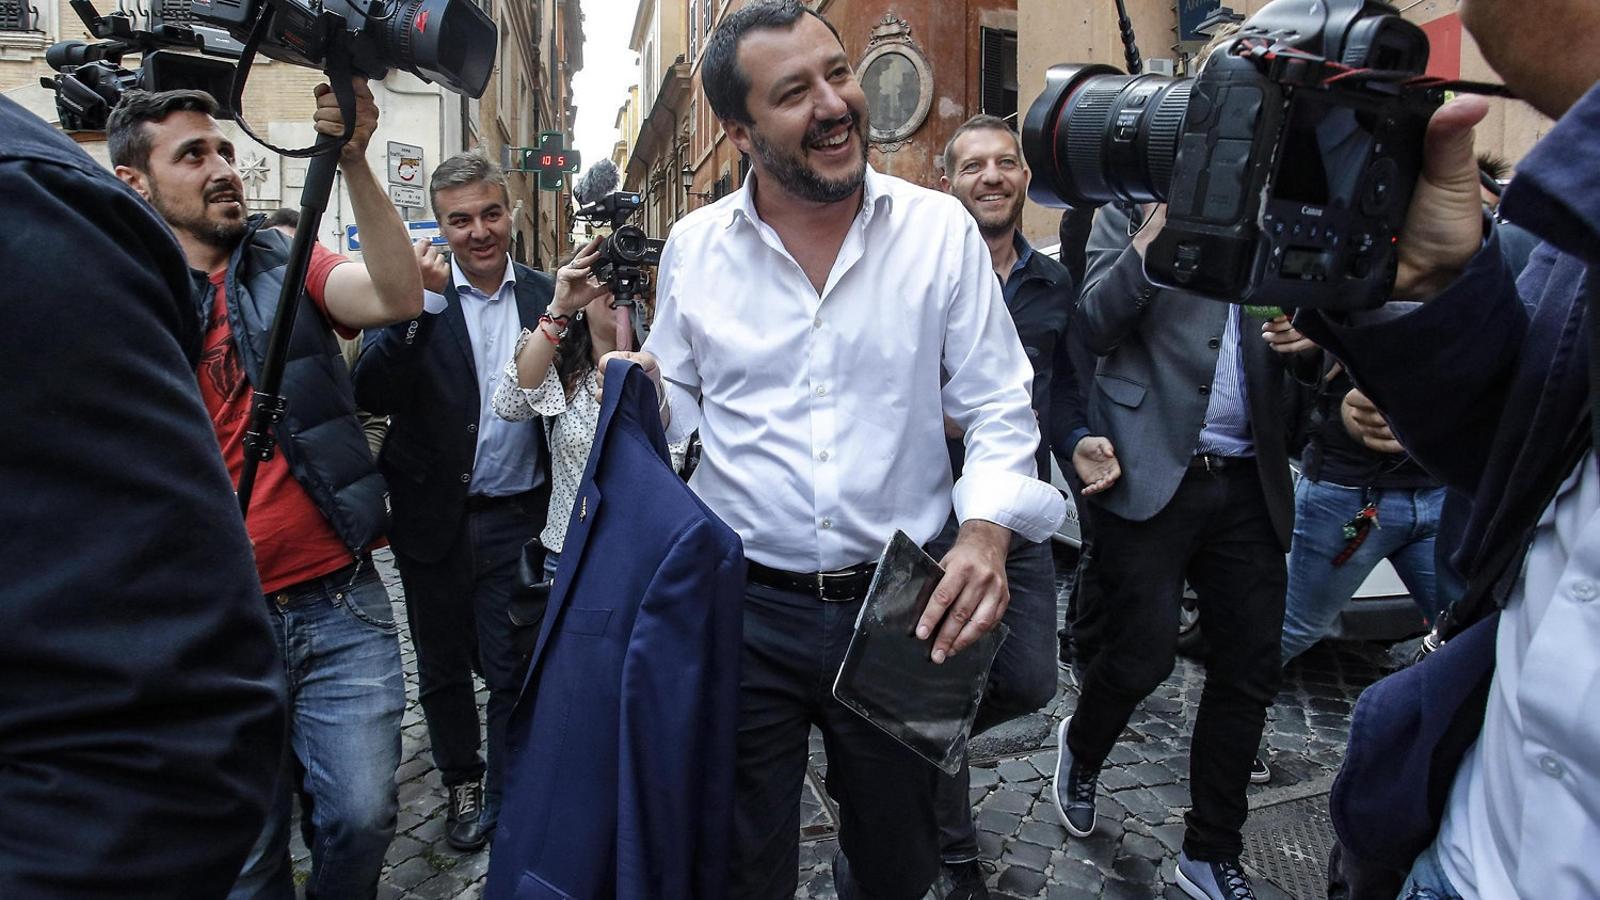 El líder de la xenòfoba Lliga Nord, Matteo Salvini, caminant per un carrer de Roma. / GIUSEPPE LAMI / EFE